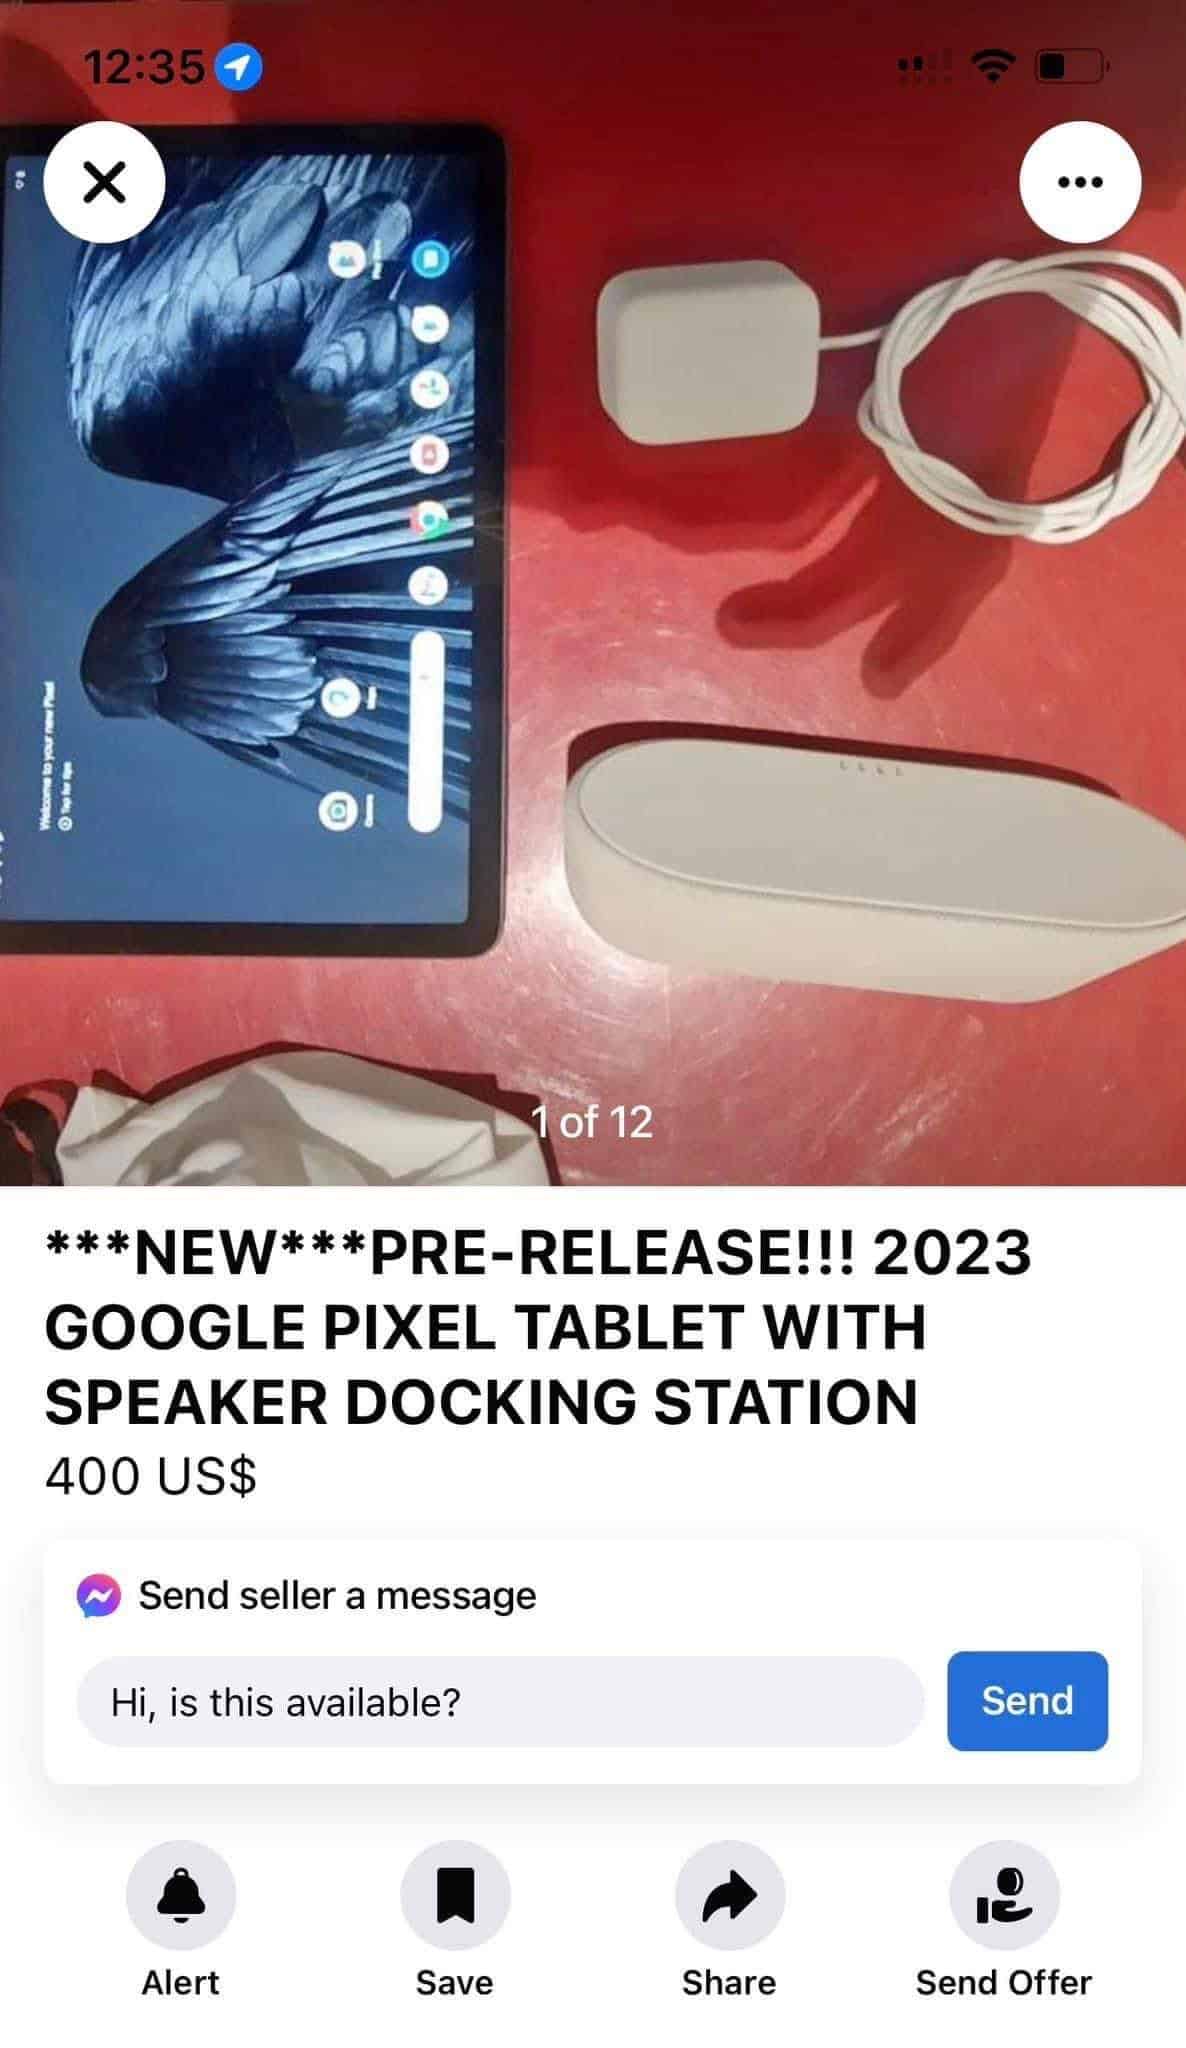 GoogleのPixel Tabletのプロトタイプが流出し、オンラインで出品されてしまった